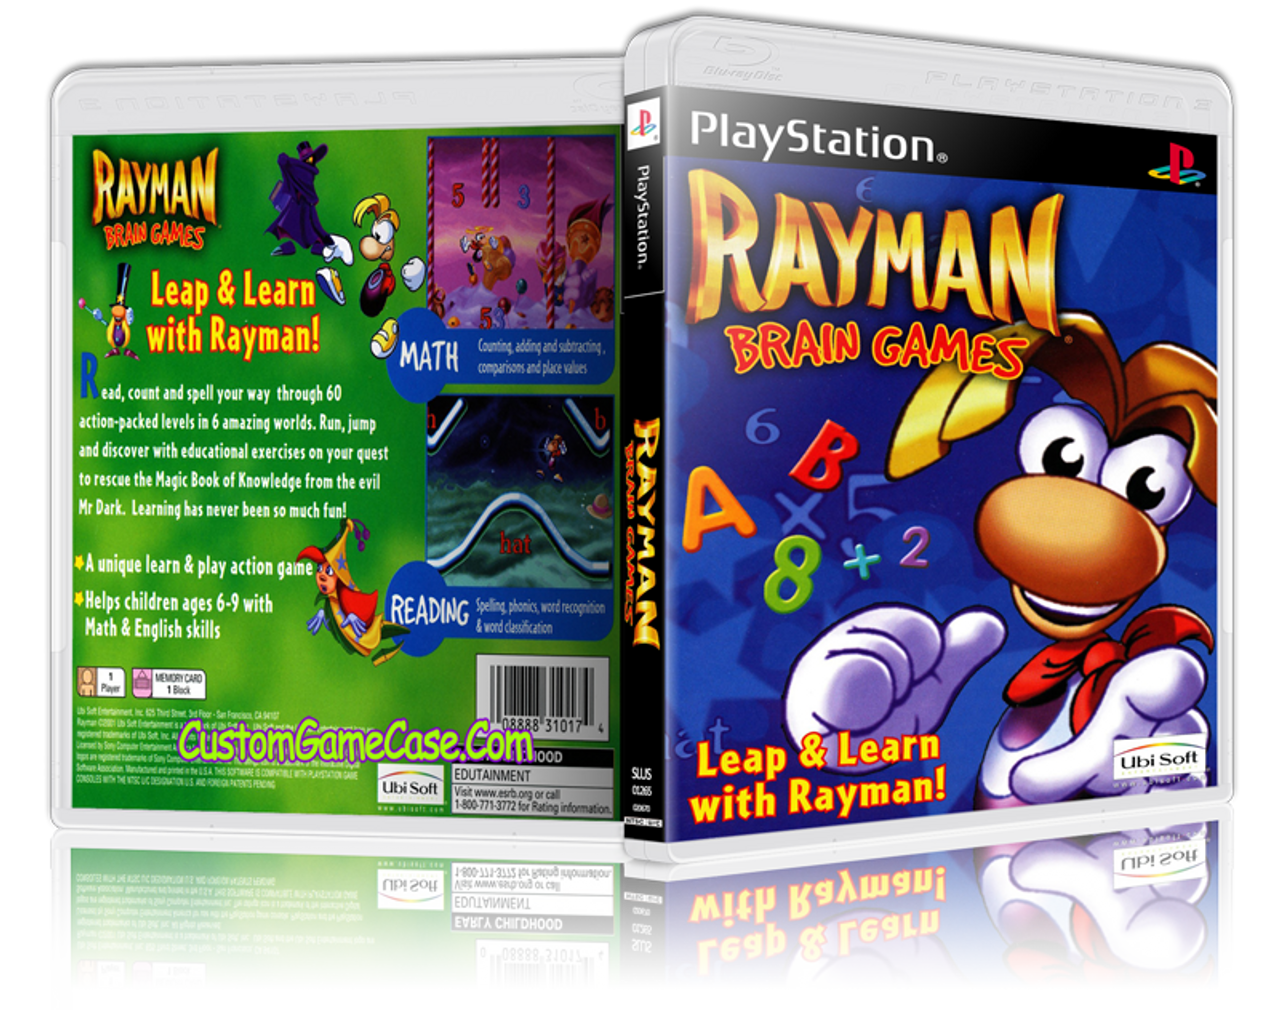 rayman playstation 1